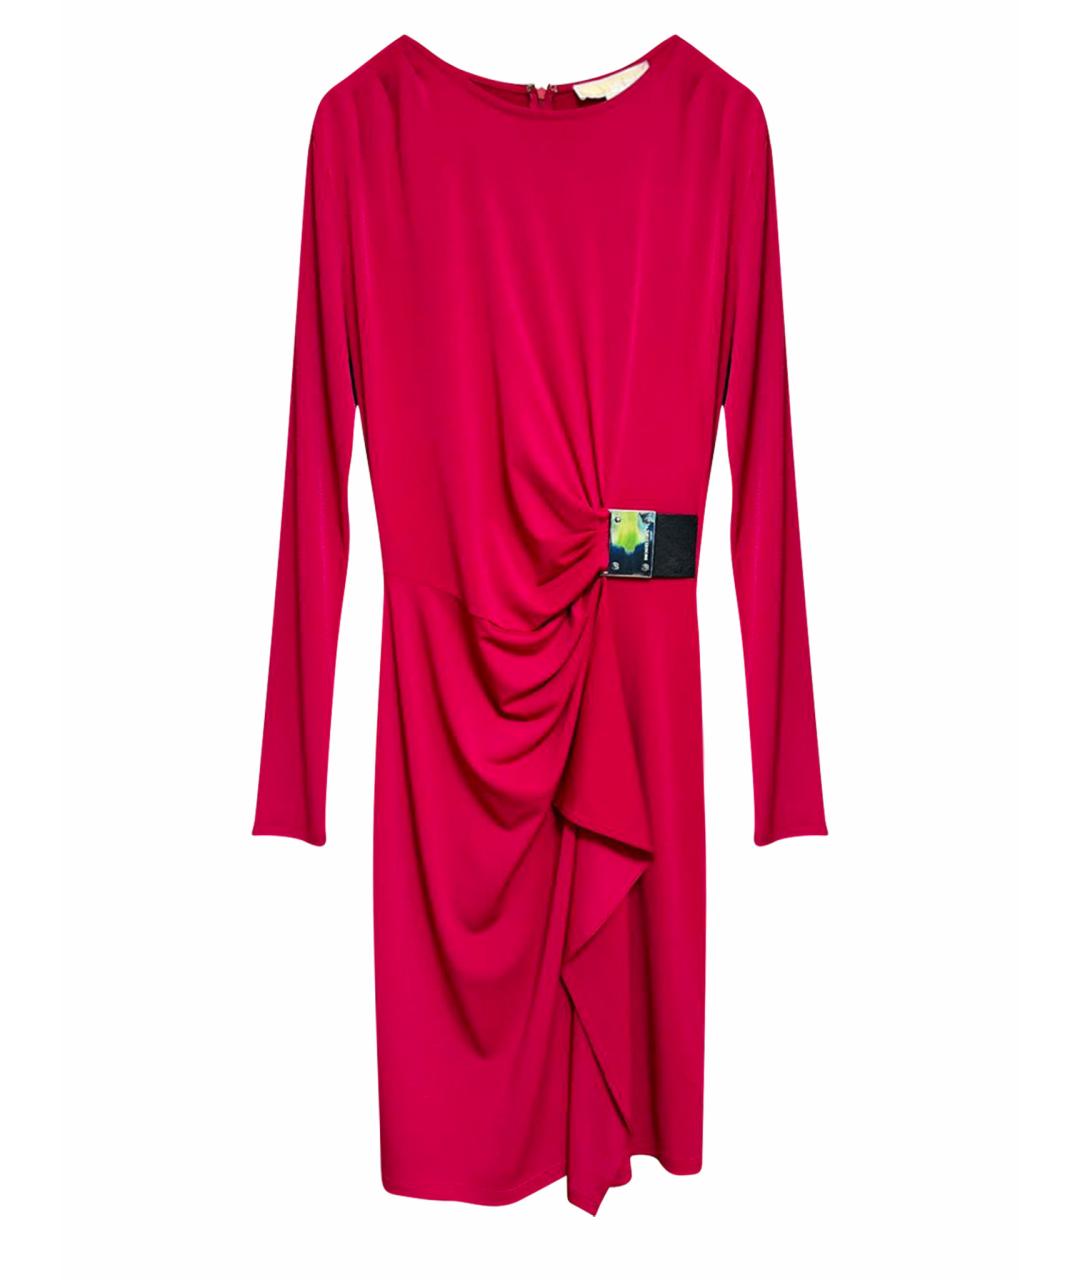 MICHAEL KORS Фуксия синтетическое вечернее платье, фото 1